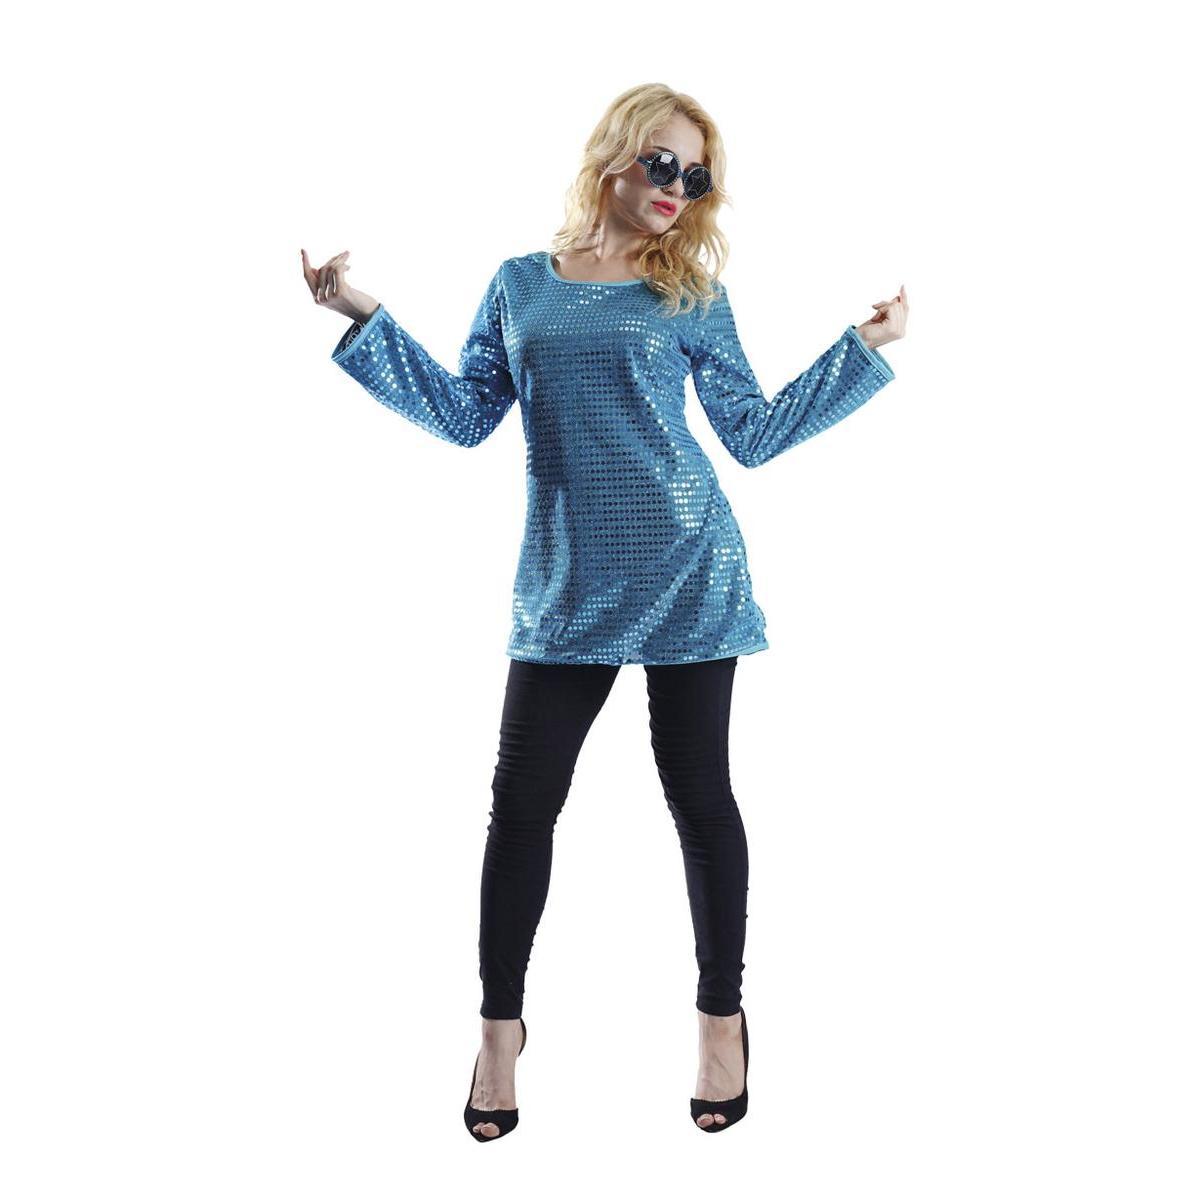 Tunique de femme à sequins - Taille adulte S/M - L 48 x H 3 x l 44 cm - Bleu - PTIT CLOWN